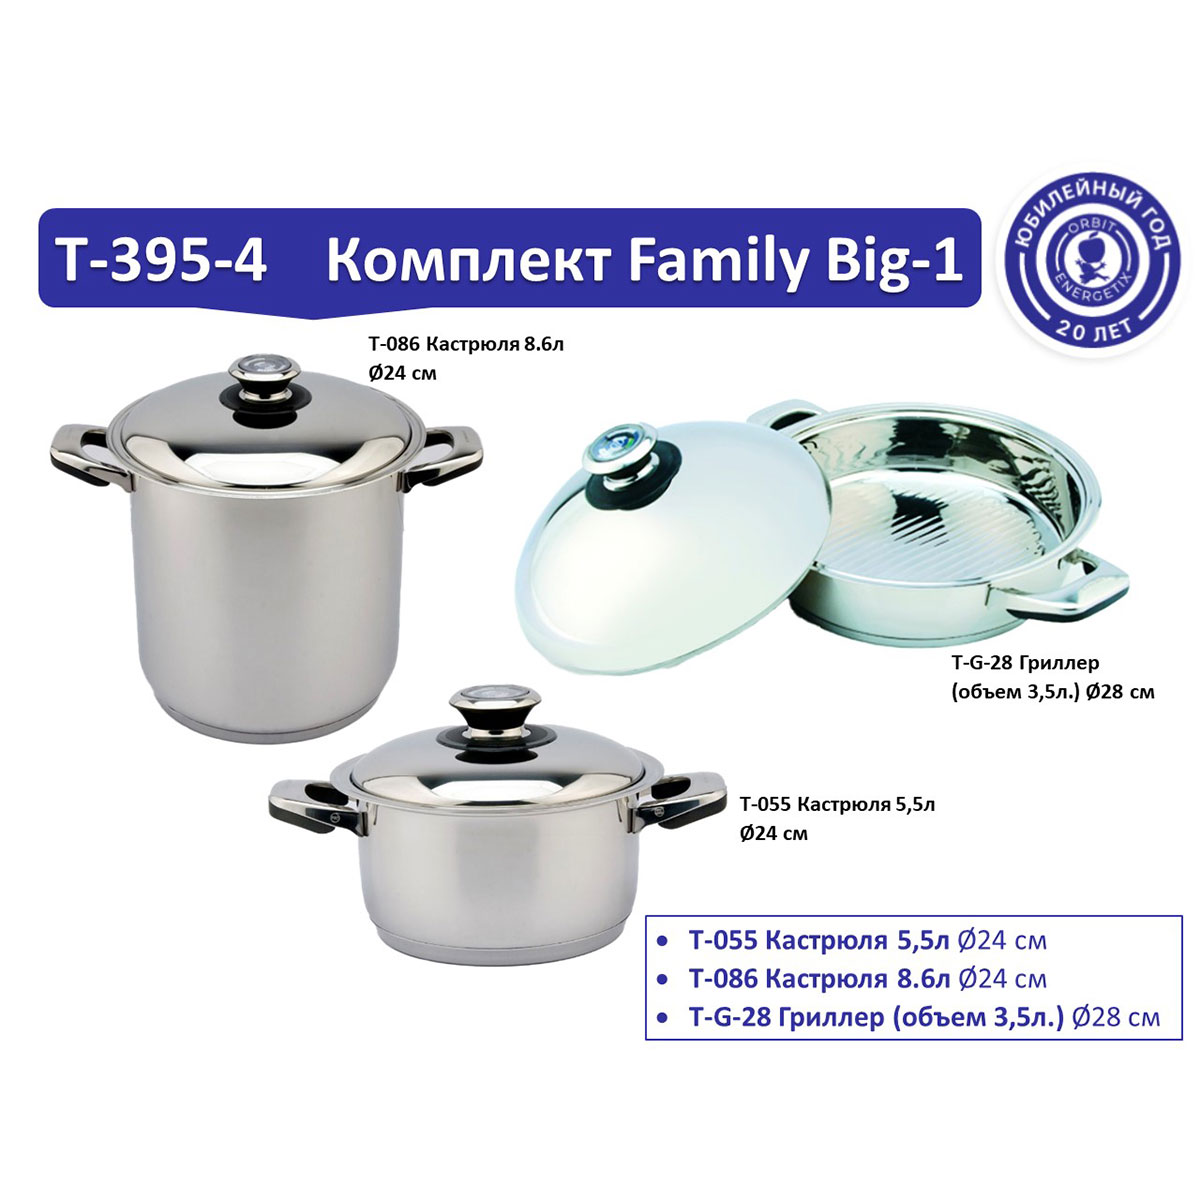 Комплект посуды T-395-4 Family Big-1